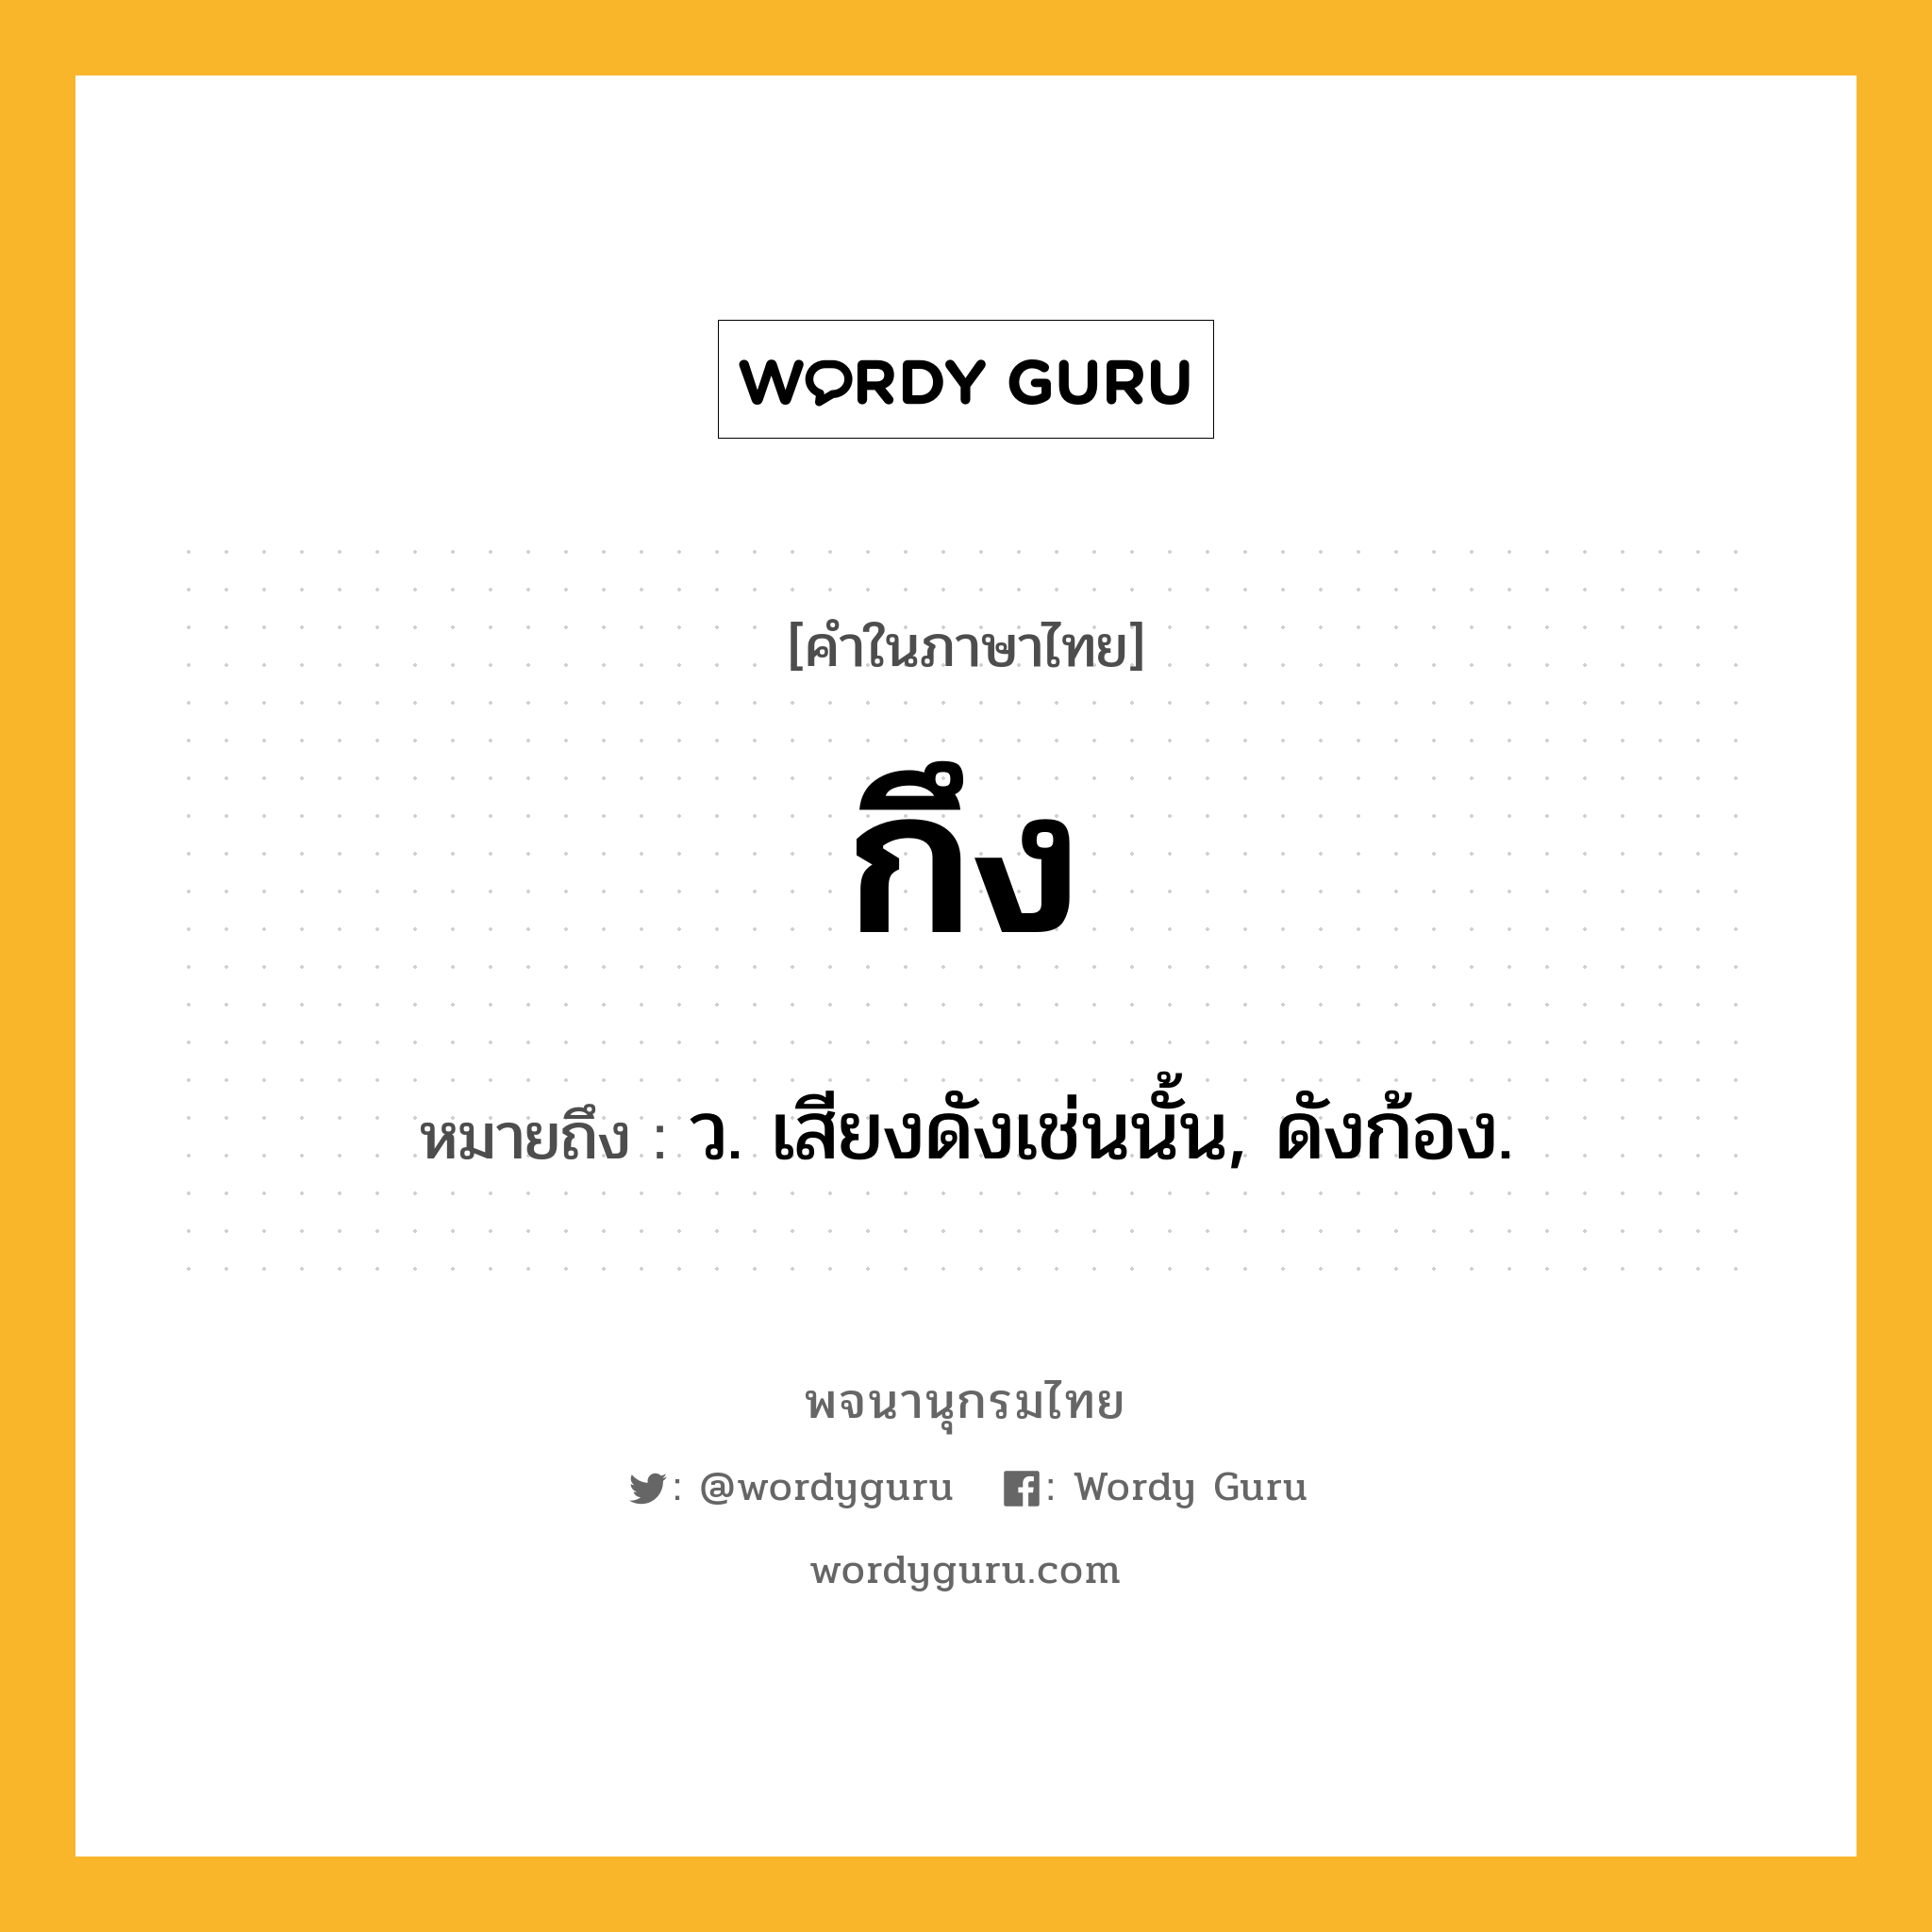 กึง หมายถึงอะไร?, คำในภาษาไทย กึง หมายถึง ว. เสียงดังเช่นนั้น, ดังก้อง.